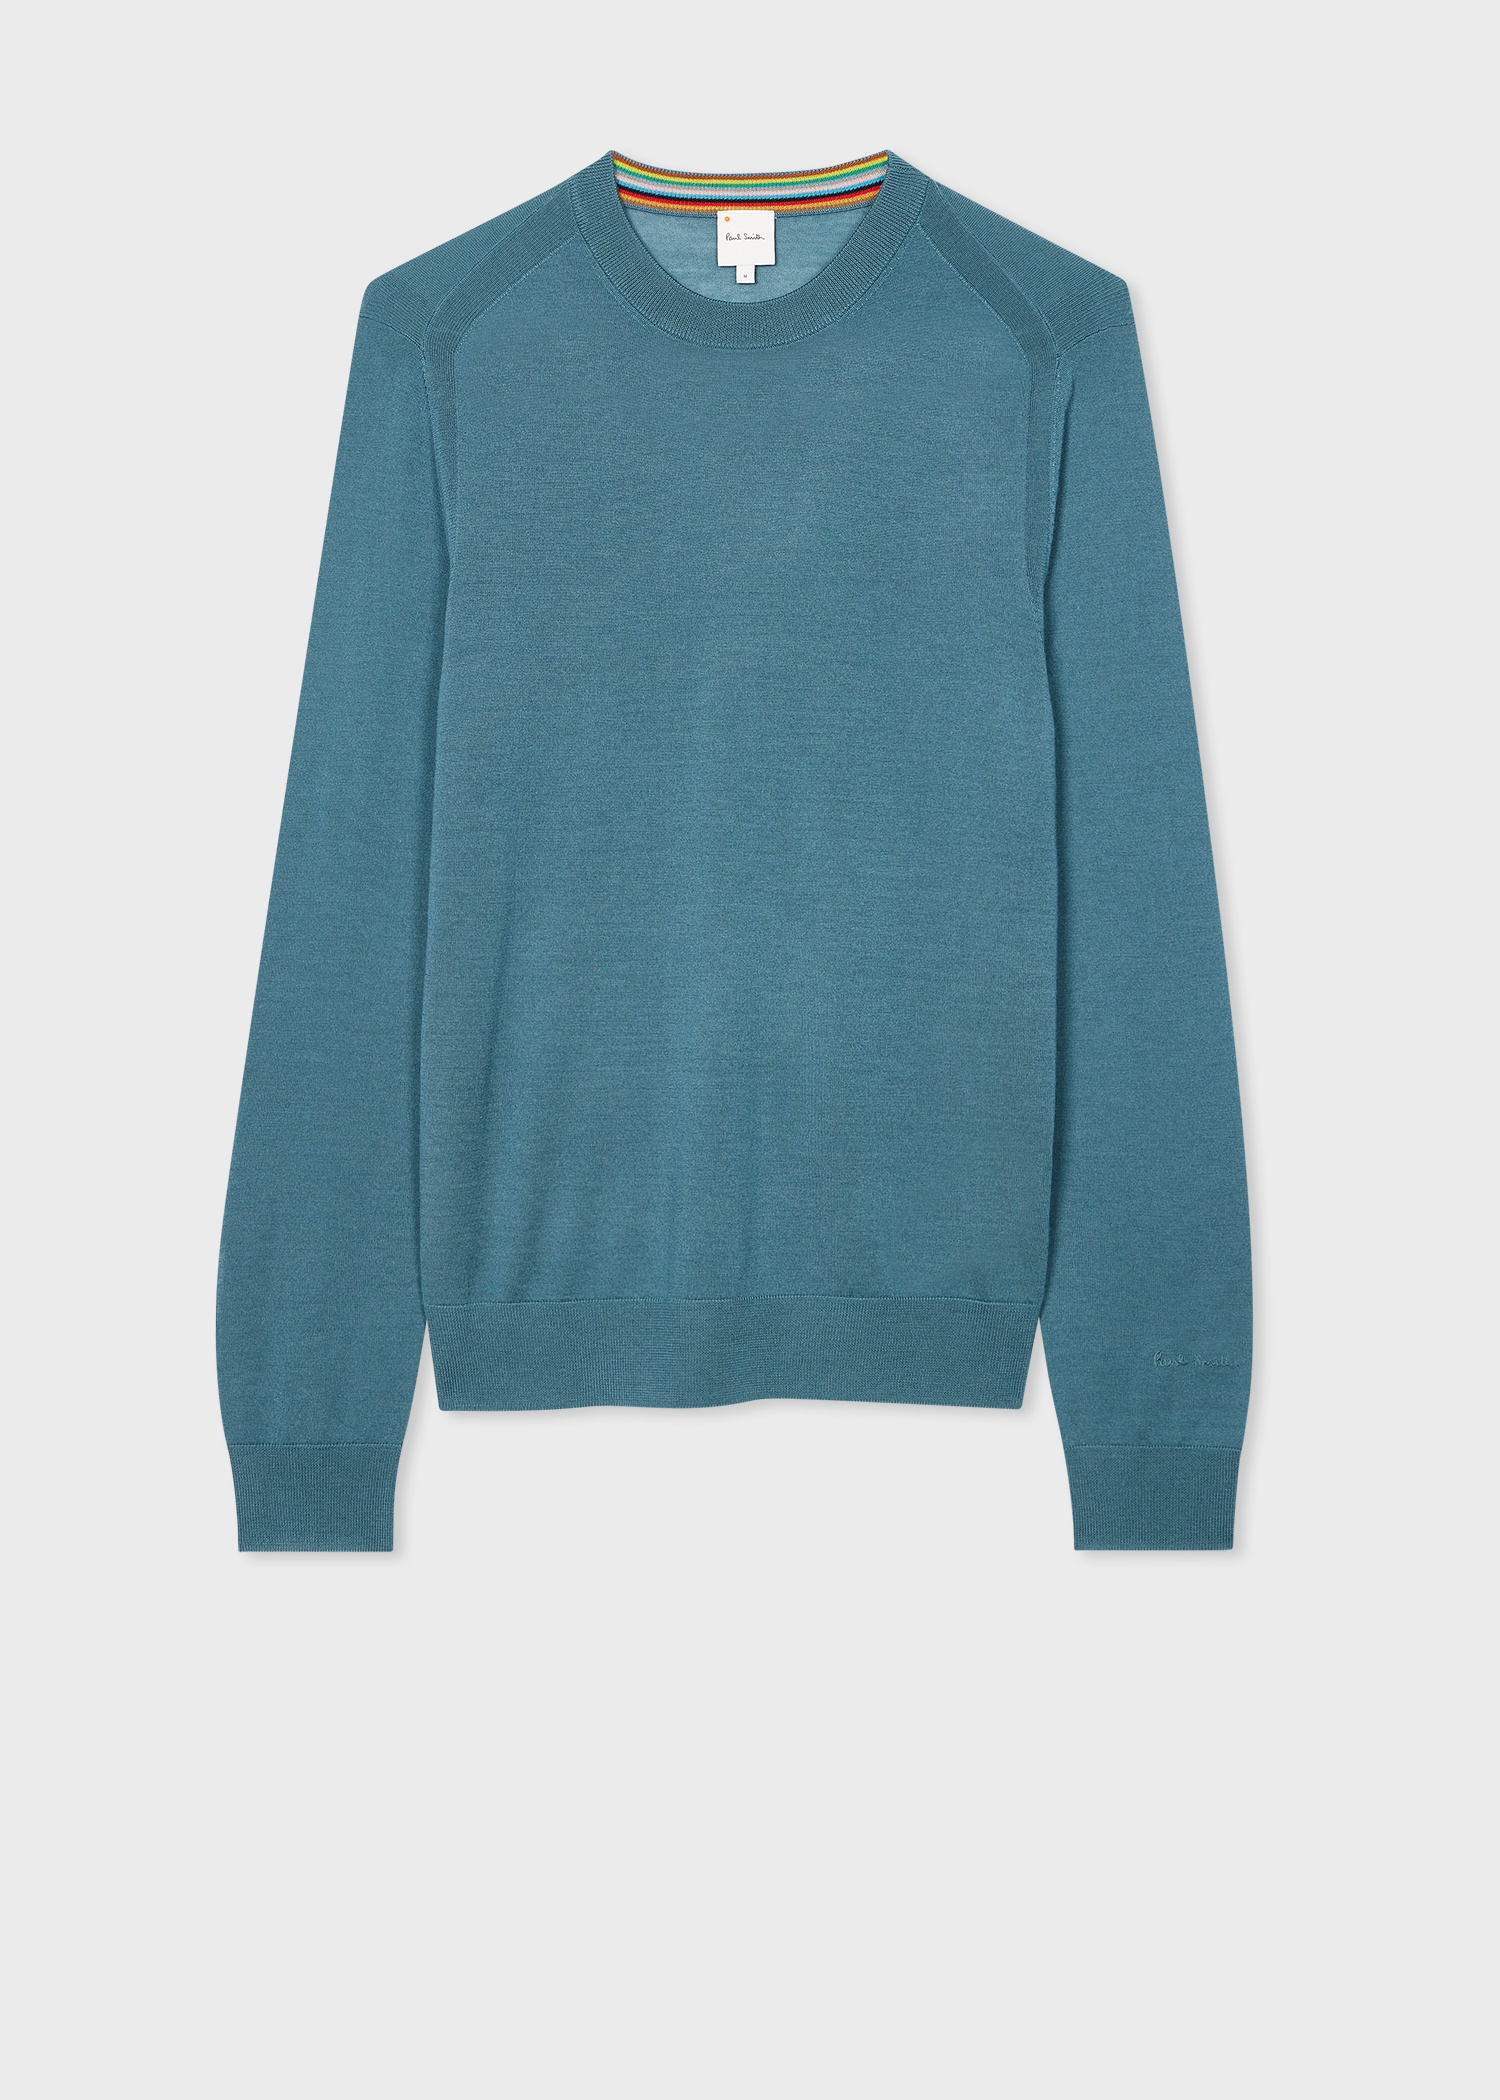 Teal Green Merino Wool Sweater - 1